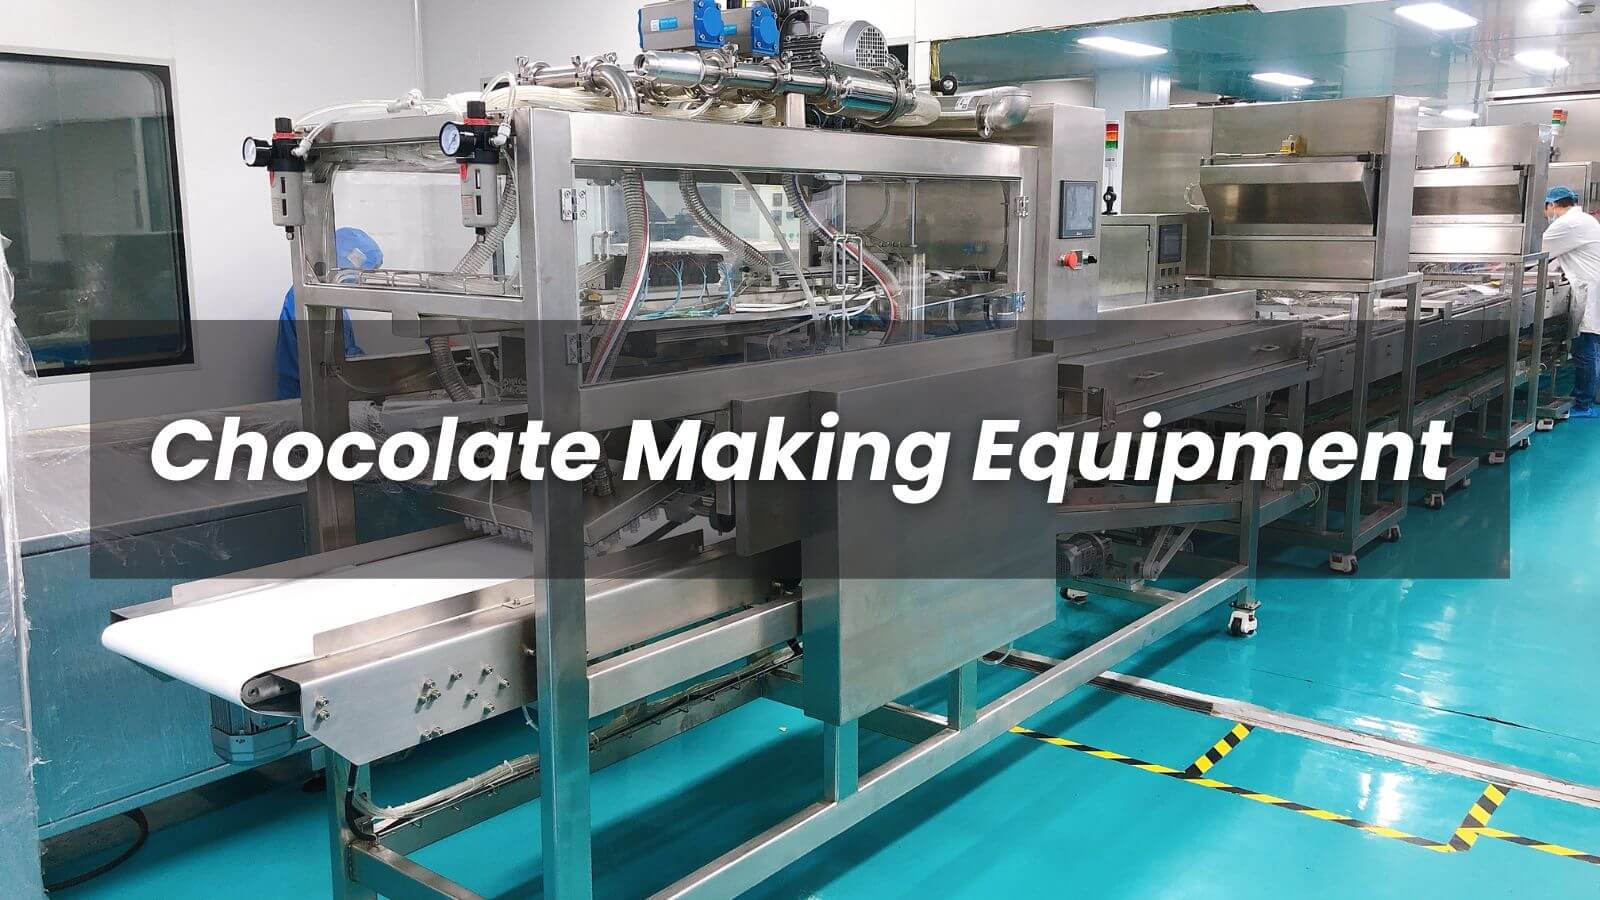 Chocolate Making Equipment Canada